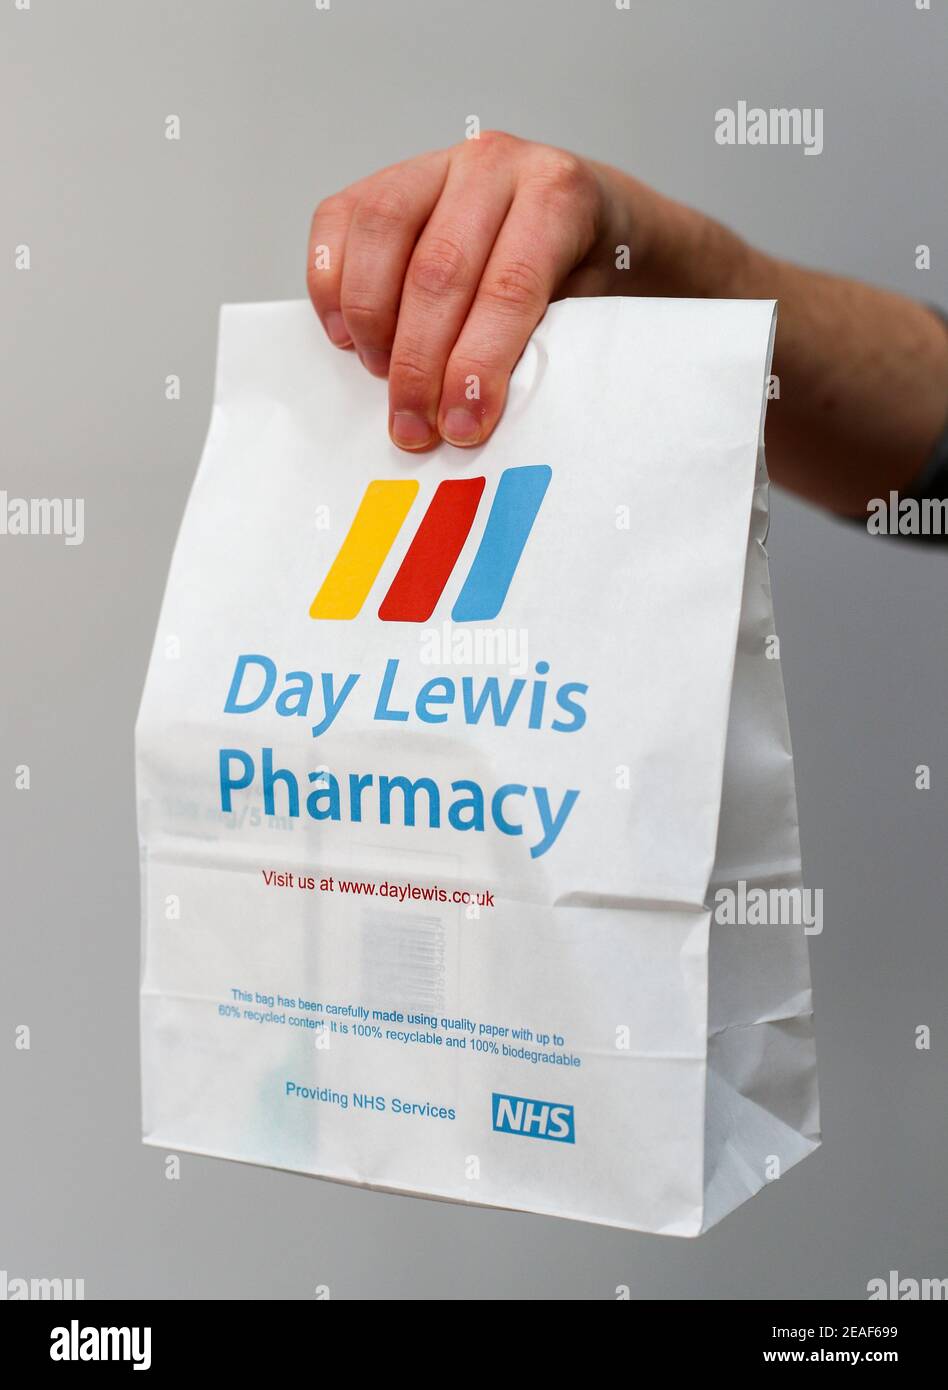 Un hombre que entrega una receta de NHS de la farmacia Day Lewis. Foto de stock